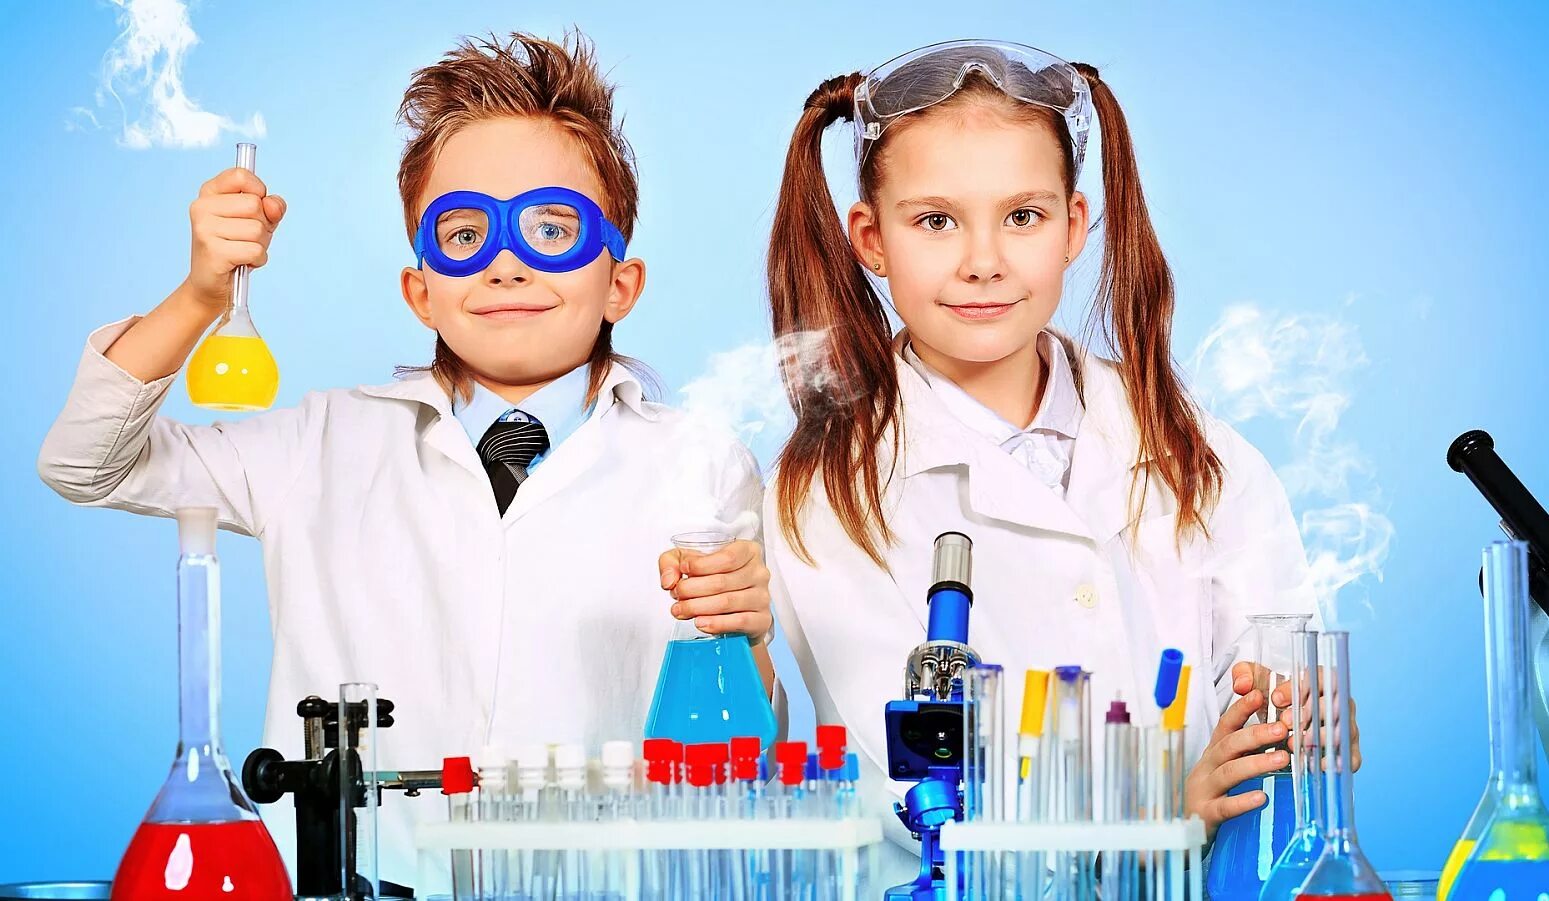 Школа опытов и экспериментов. Химические опыты для детей. Научная лаборатория для детей. Химические эксперименты для детей. День детских изобретений.